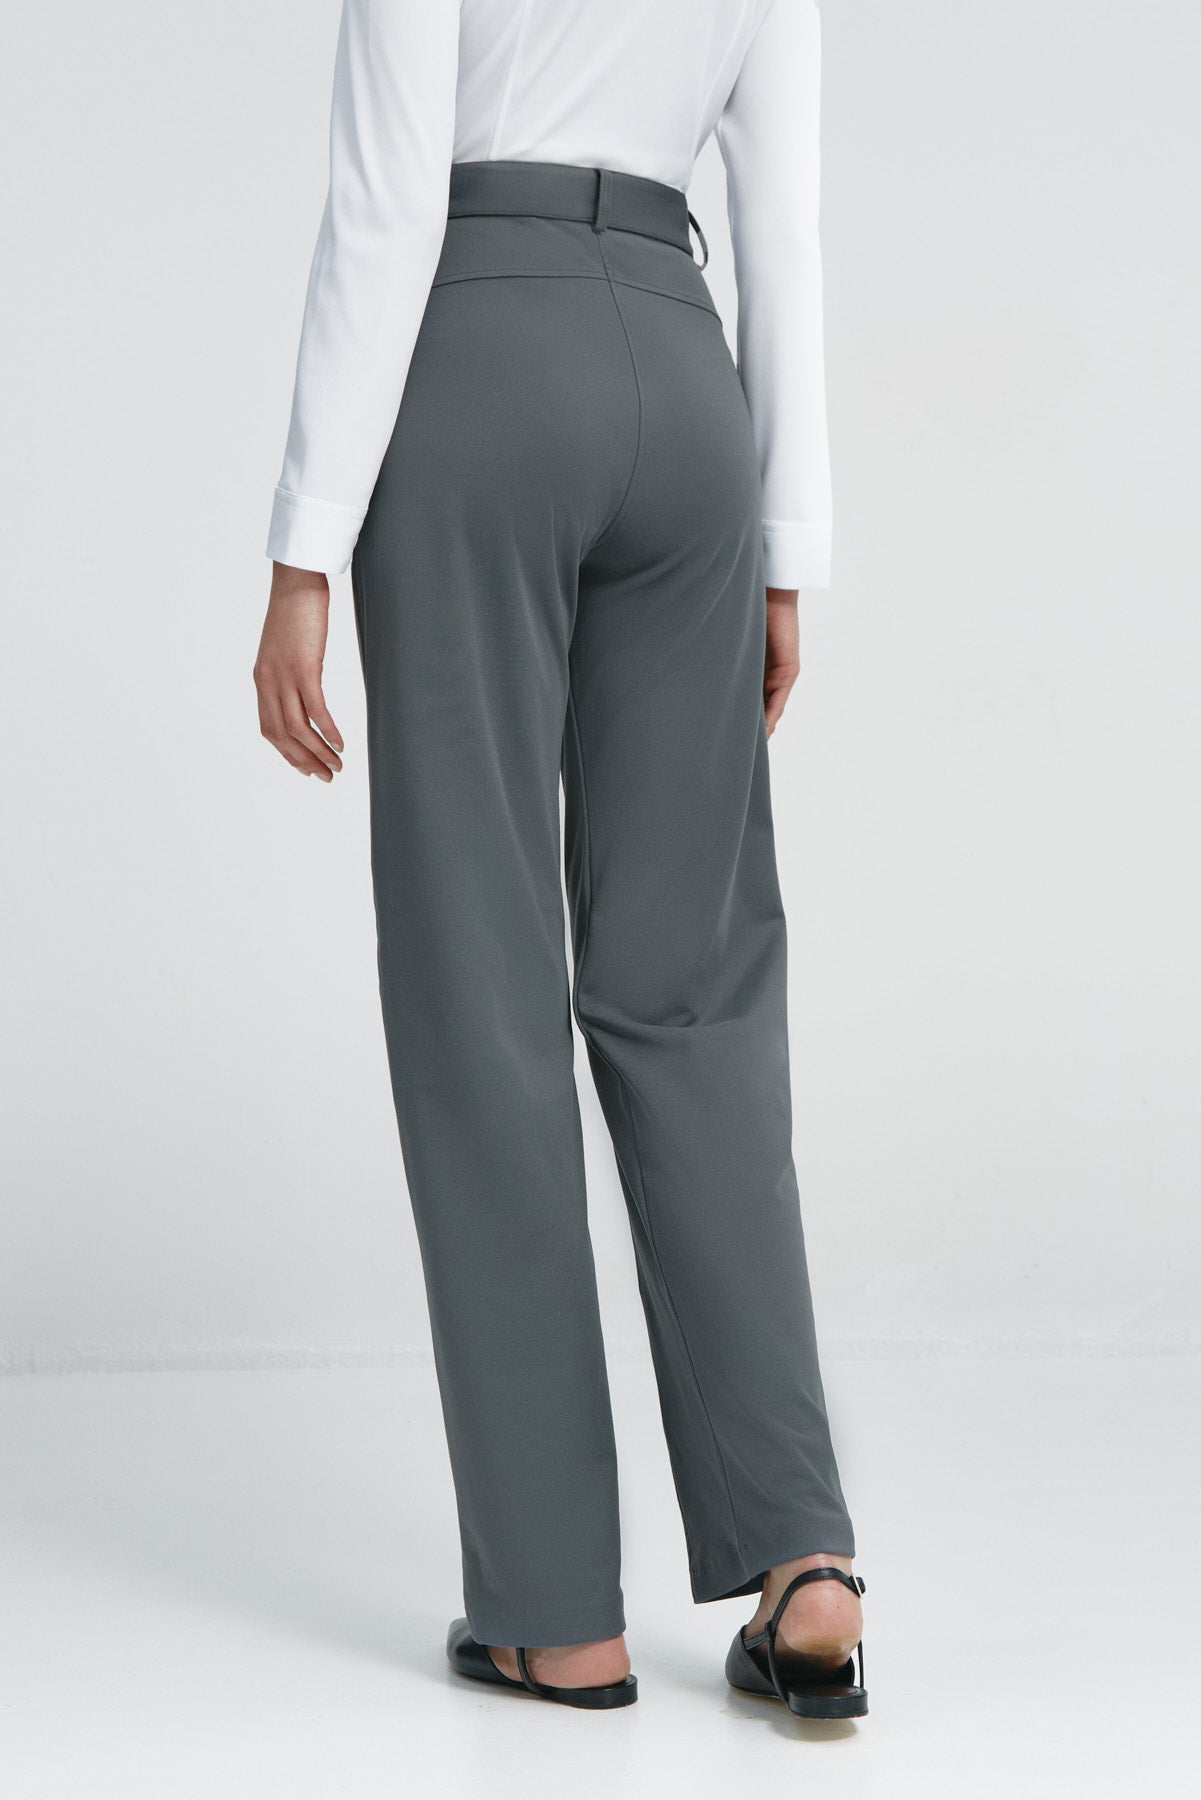 Pantalón de mujer gris de Sepiia, cómodo y resistente, ideal para cualquier ocasión. Foto espalda